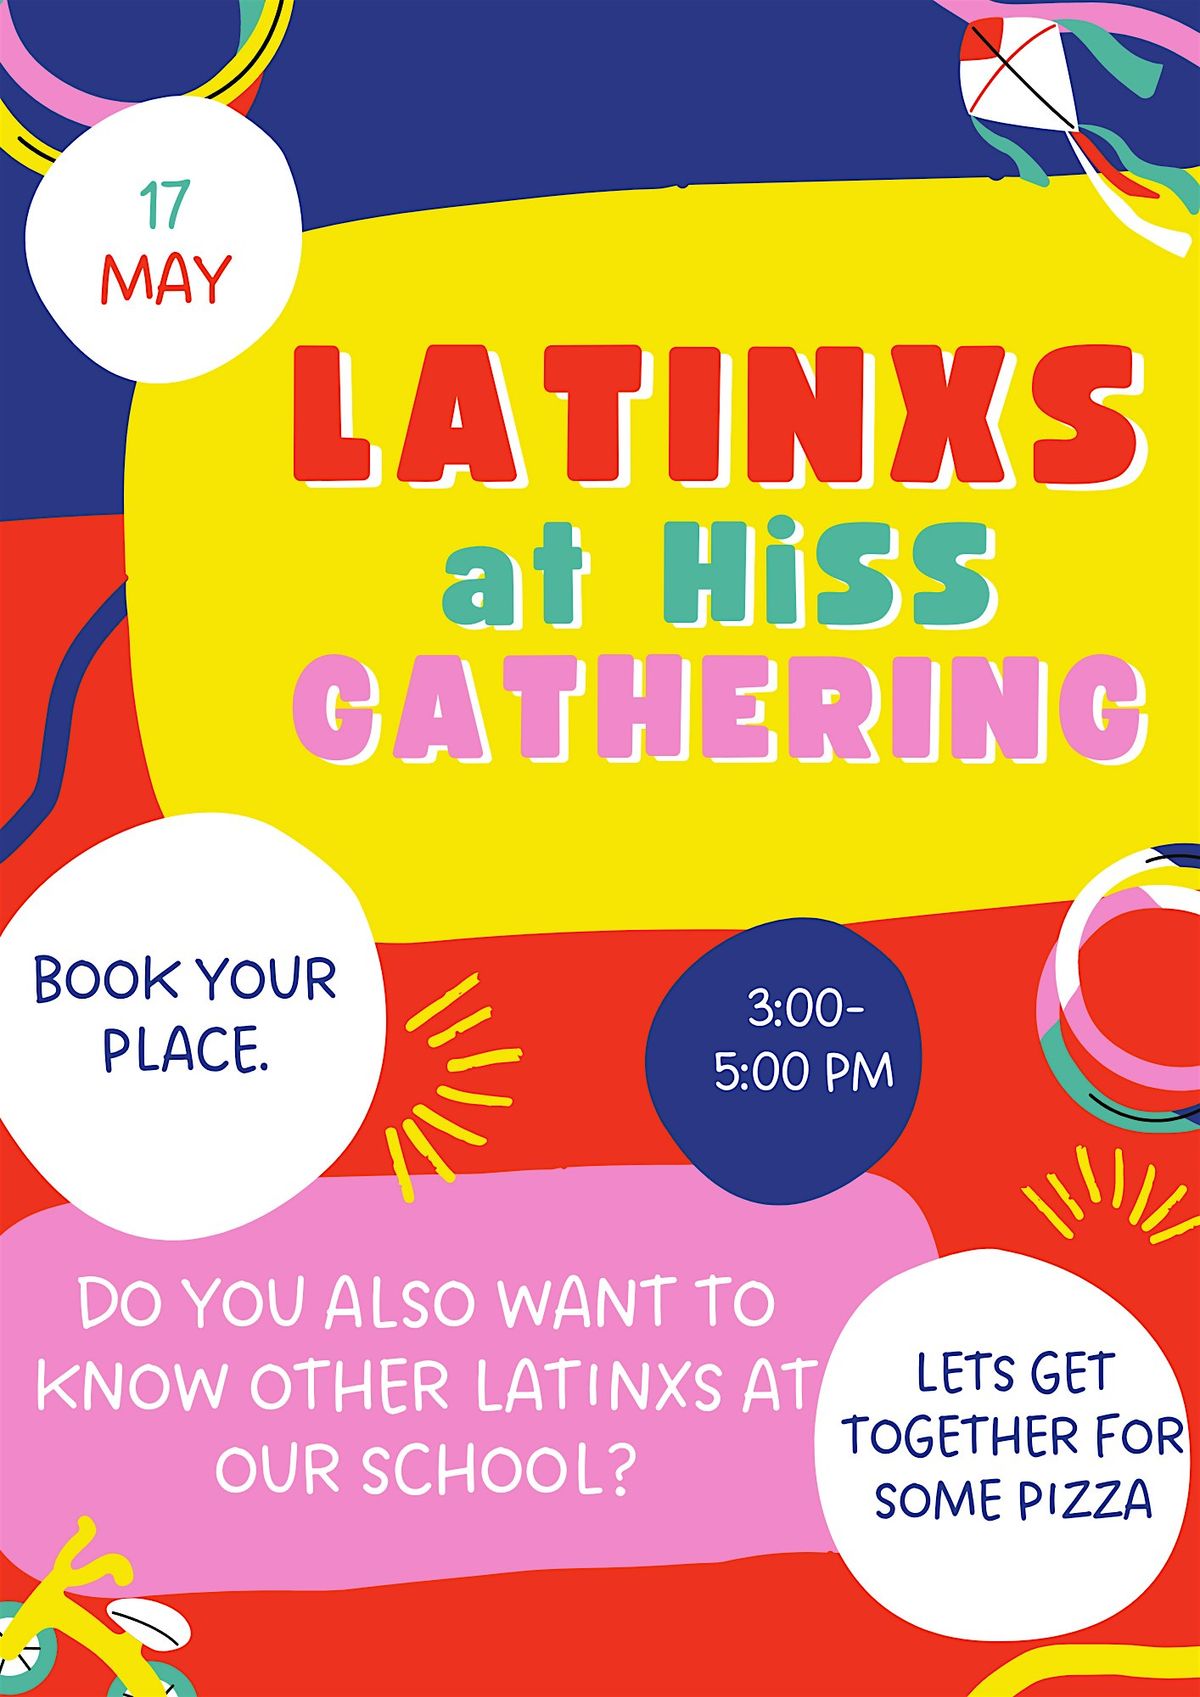 Latinxs at HiSS gathering!